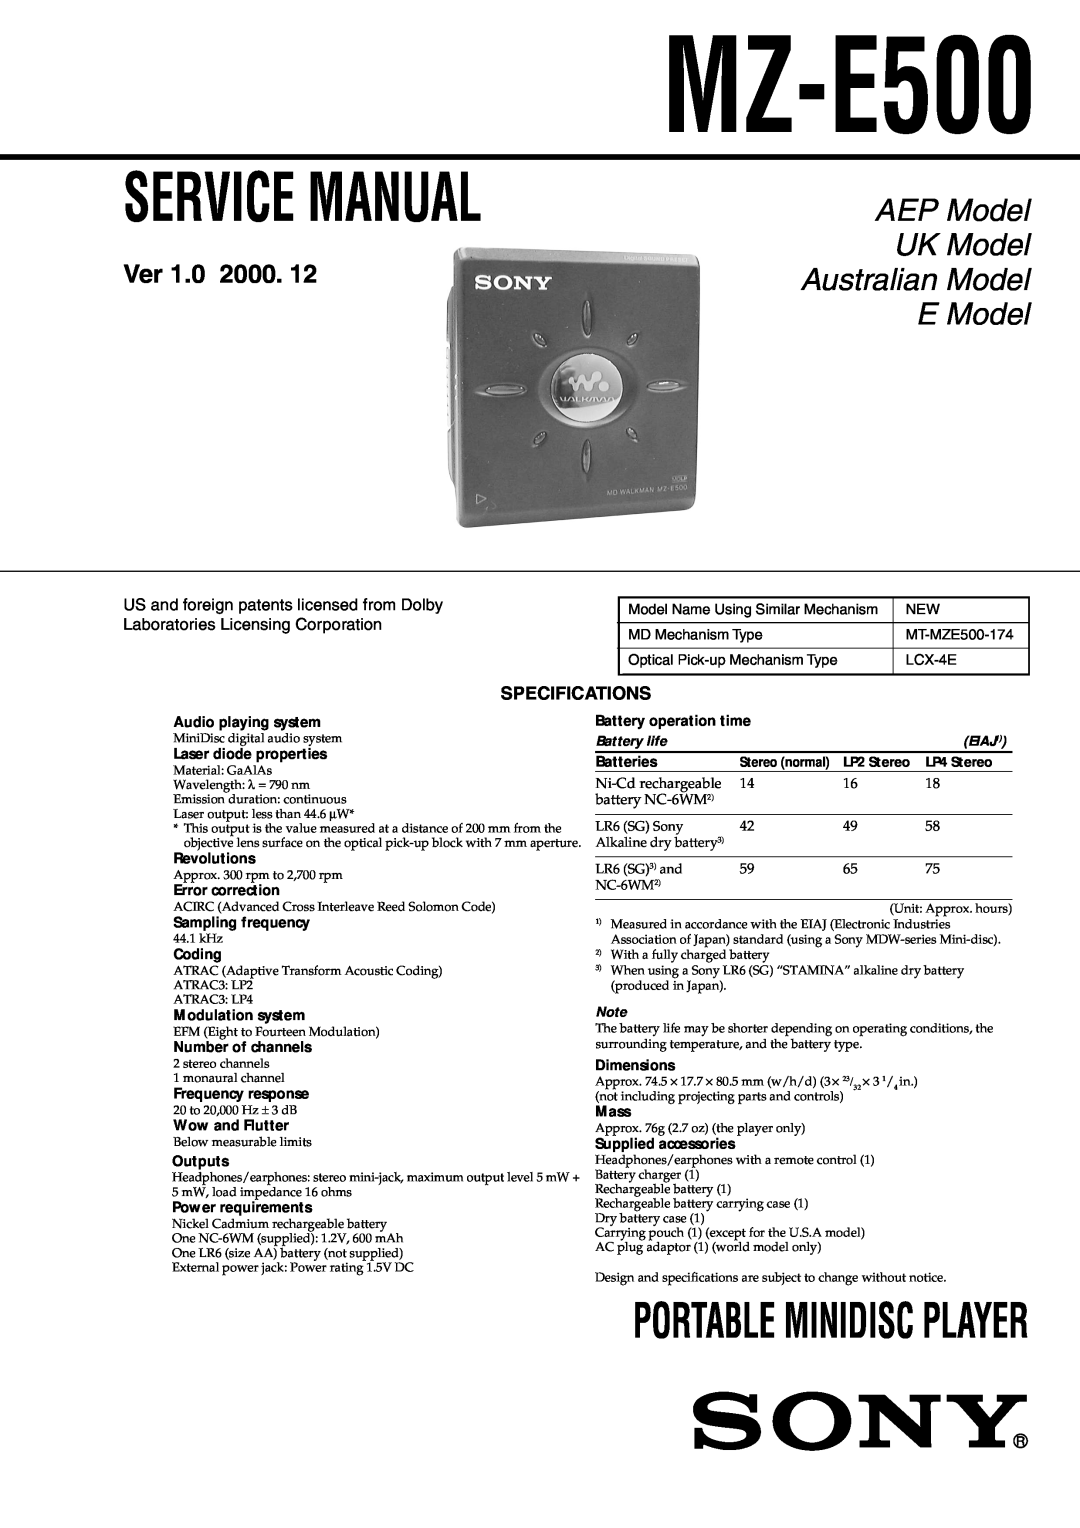 Sony MX-E500 specifications Specifications, MZ-E500, AEP Model, UK Model, Australian Model, E Model, Ver 